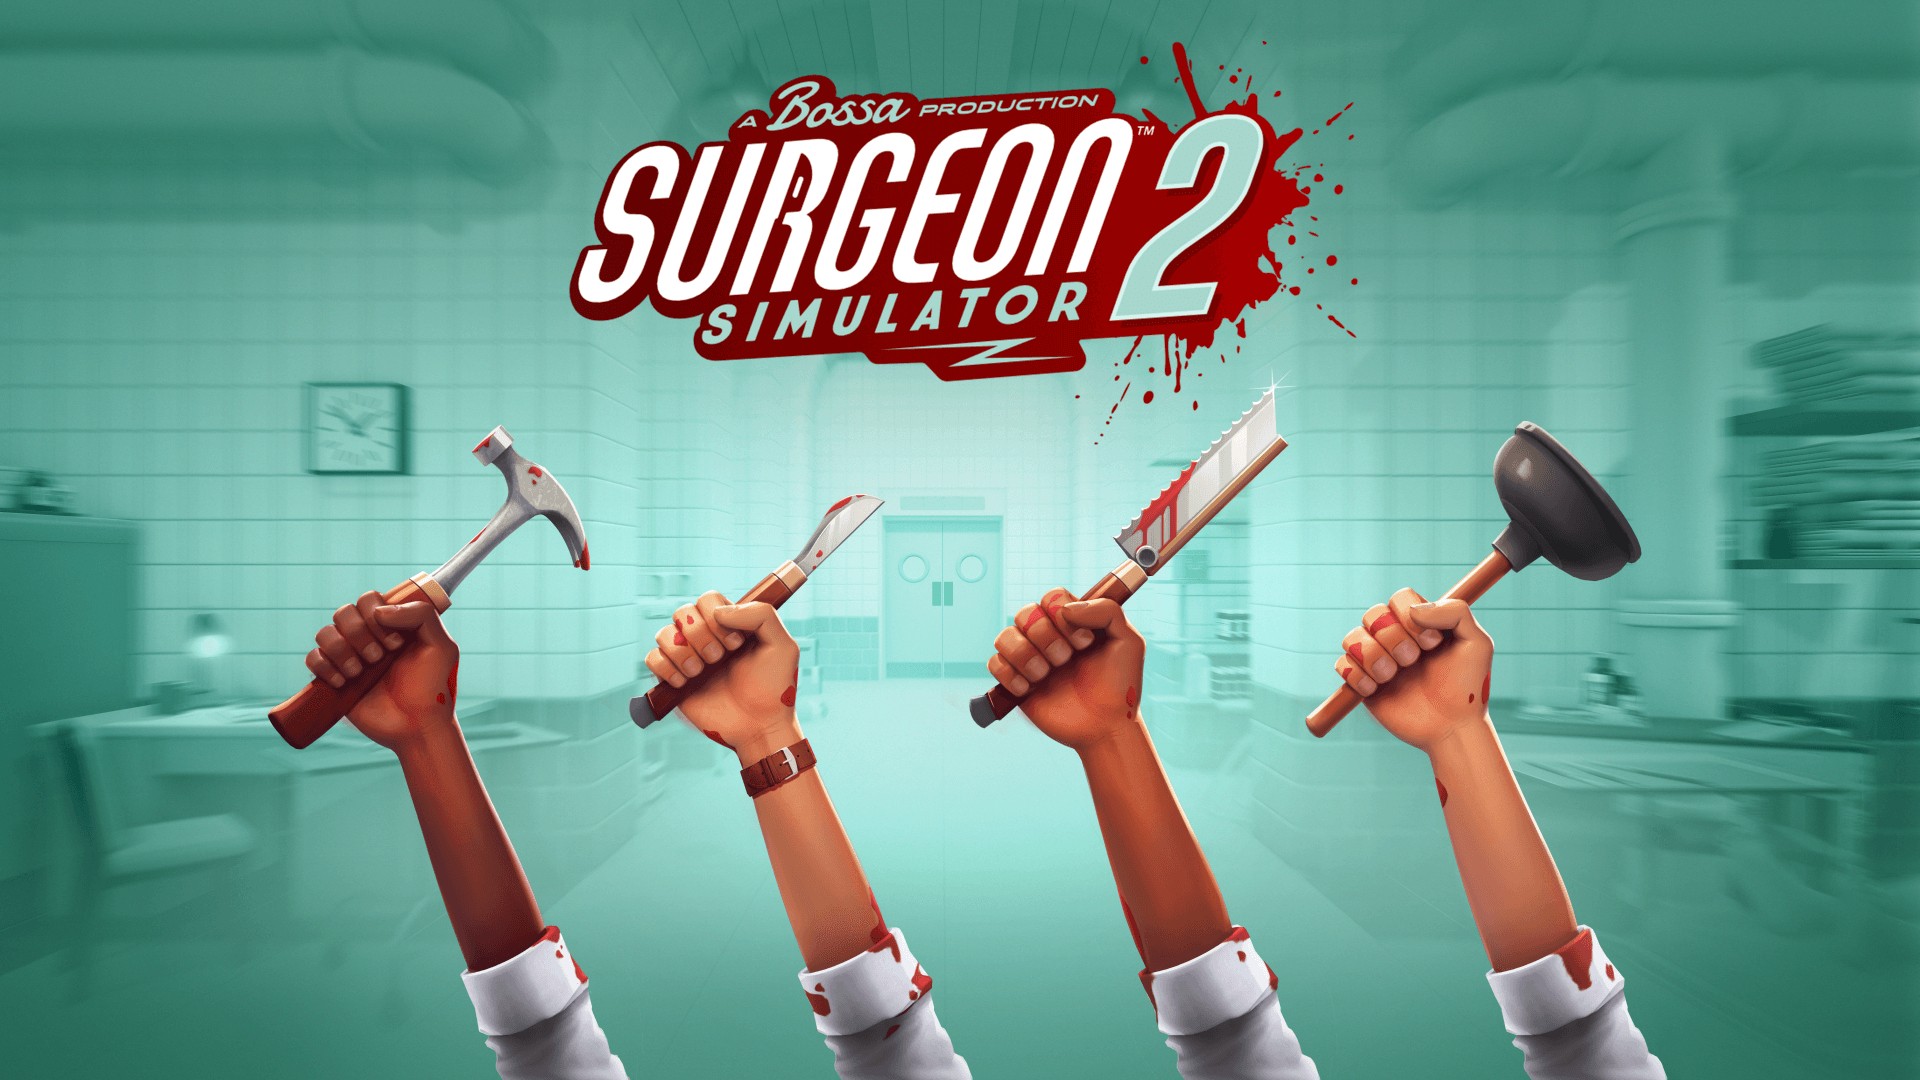 กมผ่าตัดฮาๆเล่นกับเพื่อน Surgeon Simulator 2 การเล่นเกม แบบสุดเพี้ยน รอคอย ให้ผู้เล่นได้ลิ้มลองระบบการเล่นเกม สุดแปลกใหม่ รีวิวเกม Remove term: เกมออนไลน์ตลกๆ เกมออนไลน์ตลกๆRemove term: เกมออนไลน์ฮาๆ เกมออนไลน์ฮาๆRemove term: เกมออนไลน์2020 เกมออนไลน์2020Remove term: เกมออนไลน์ยอดนิยม เกมออนไลน์ยอดนิยมRemove term: เกมคอมน่าเล่น เกมคอมน่าเล่นRemove term: เกมผ่าตัดฮาๆเล่นกับเพื่อน เกมผ่าตัดฮาๆเล่นกับเพื่อนRemove term: game Surgery Online game Surgery OnlineRemove term: เกมหมอผ่าตัดพยาบาลแพทย์ออนไลน์ เกมหมอผ่าตัดพยาบาลแพทย์ออนไลน์